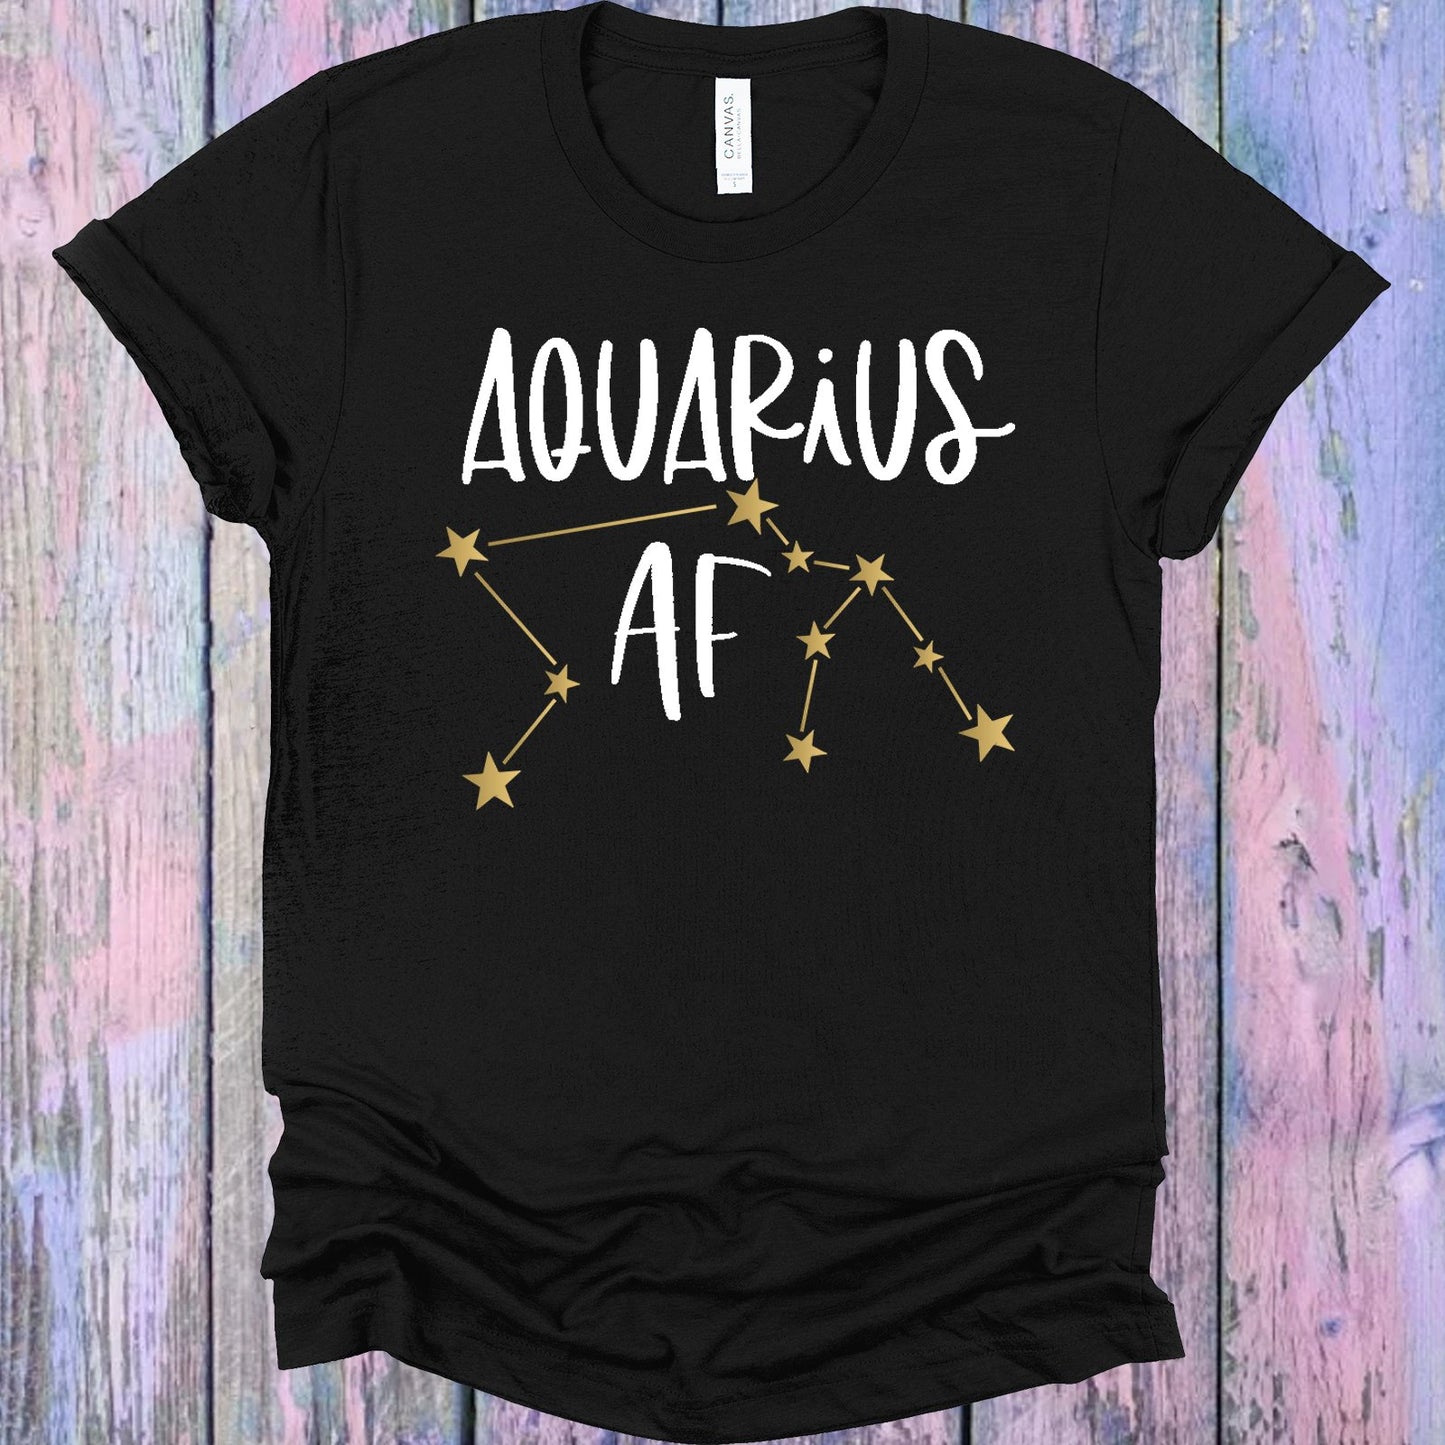 Aquarius Af Graphic Tee Graphic Tee